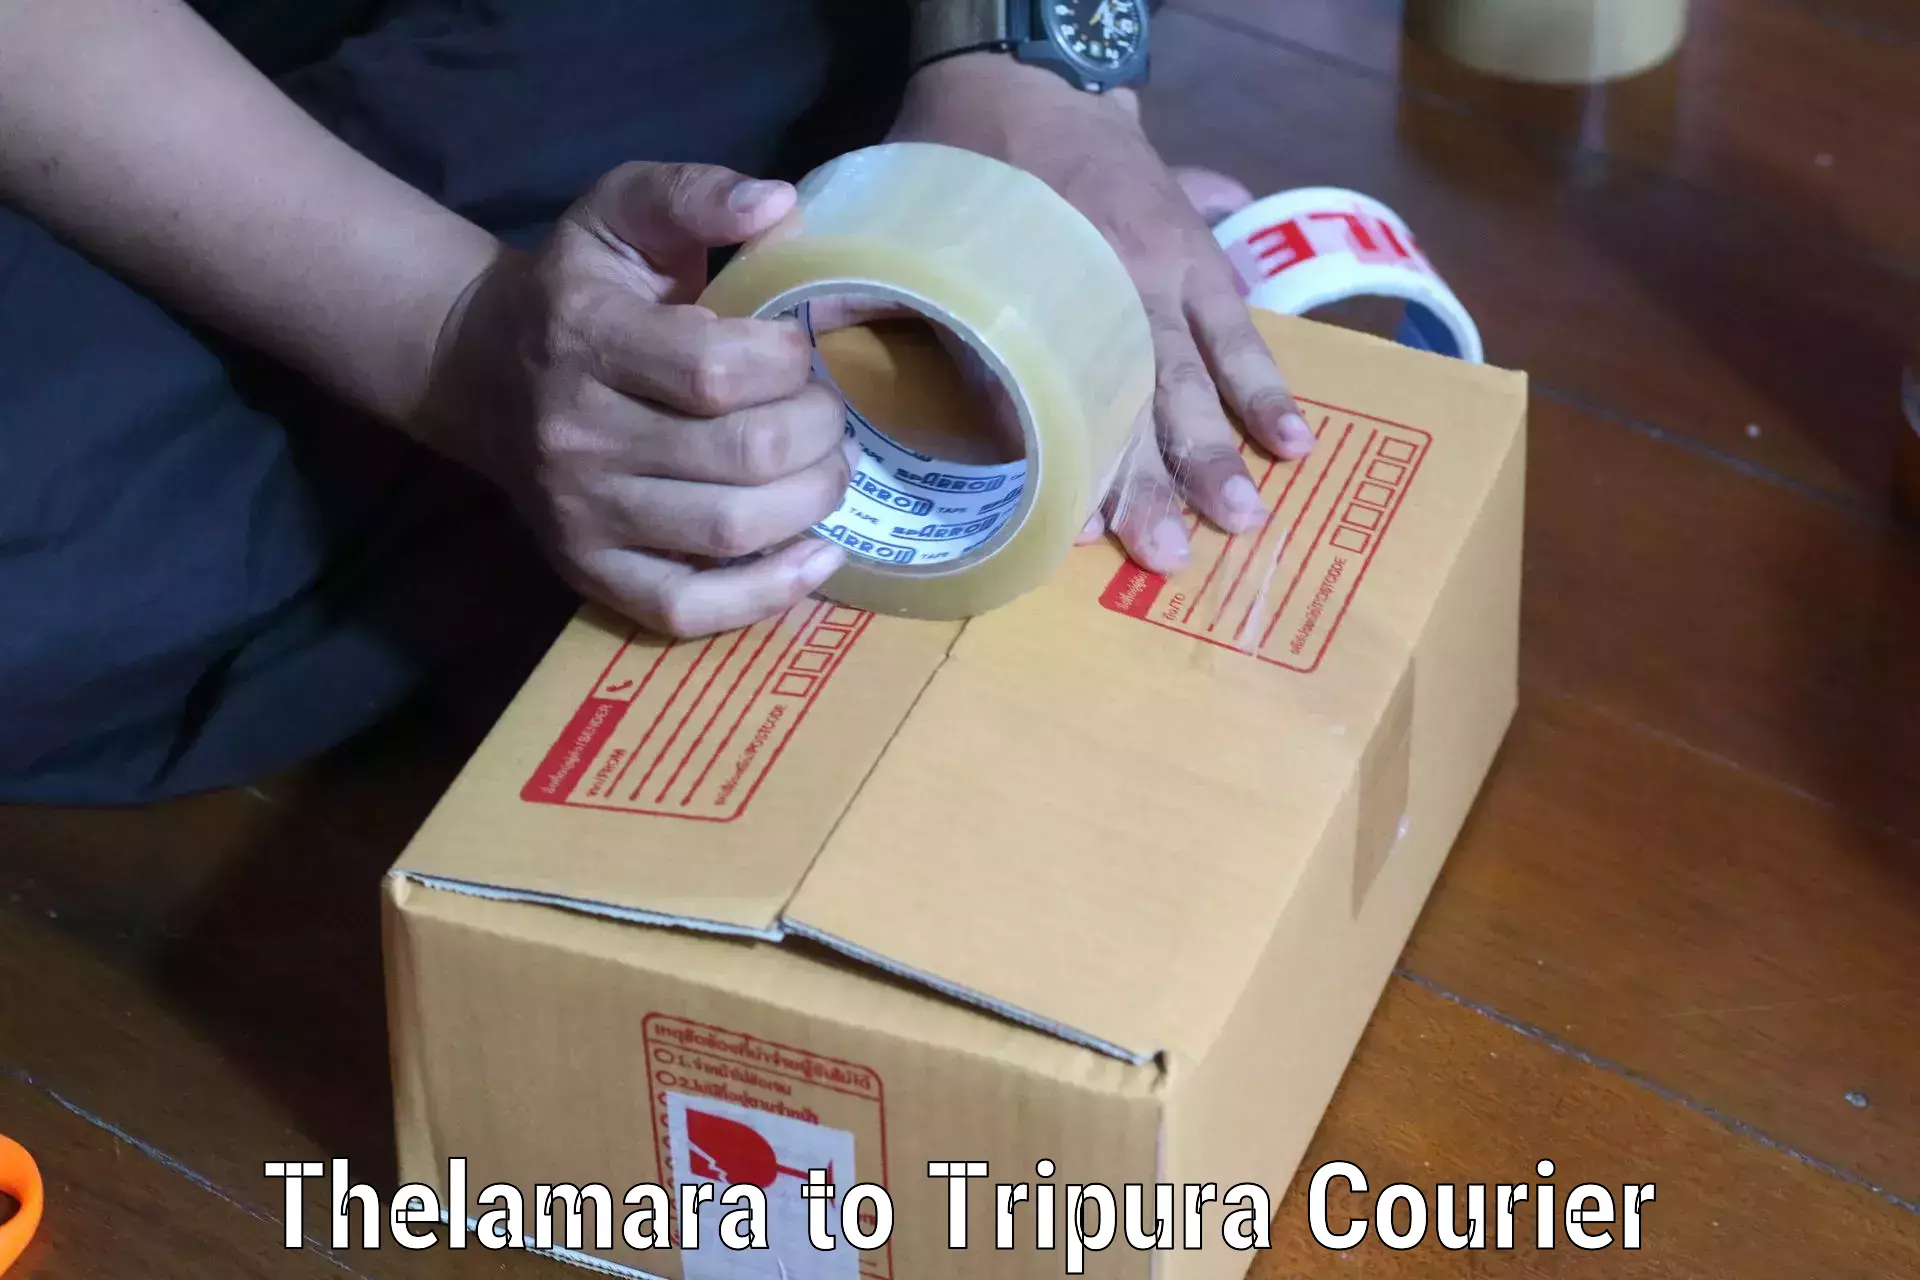 Bulk shipment Thelamara to Udaipur Tripura